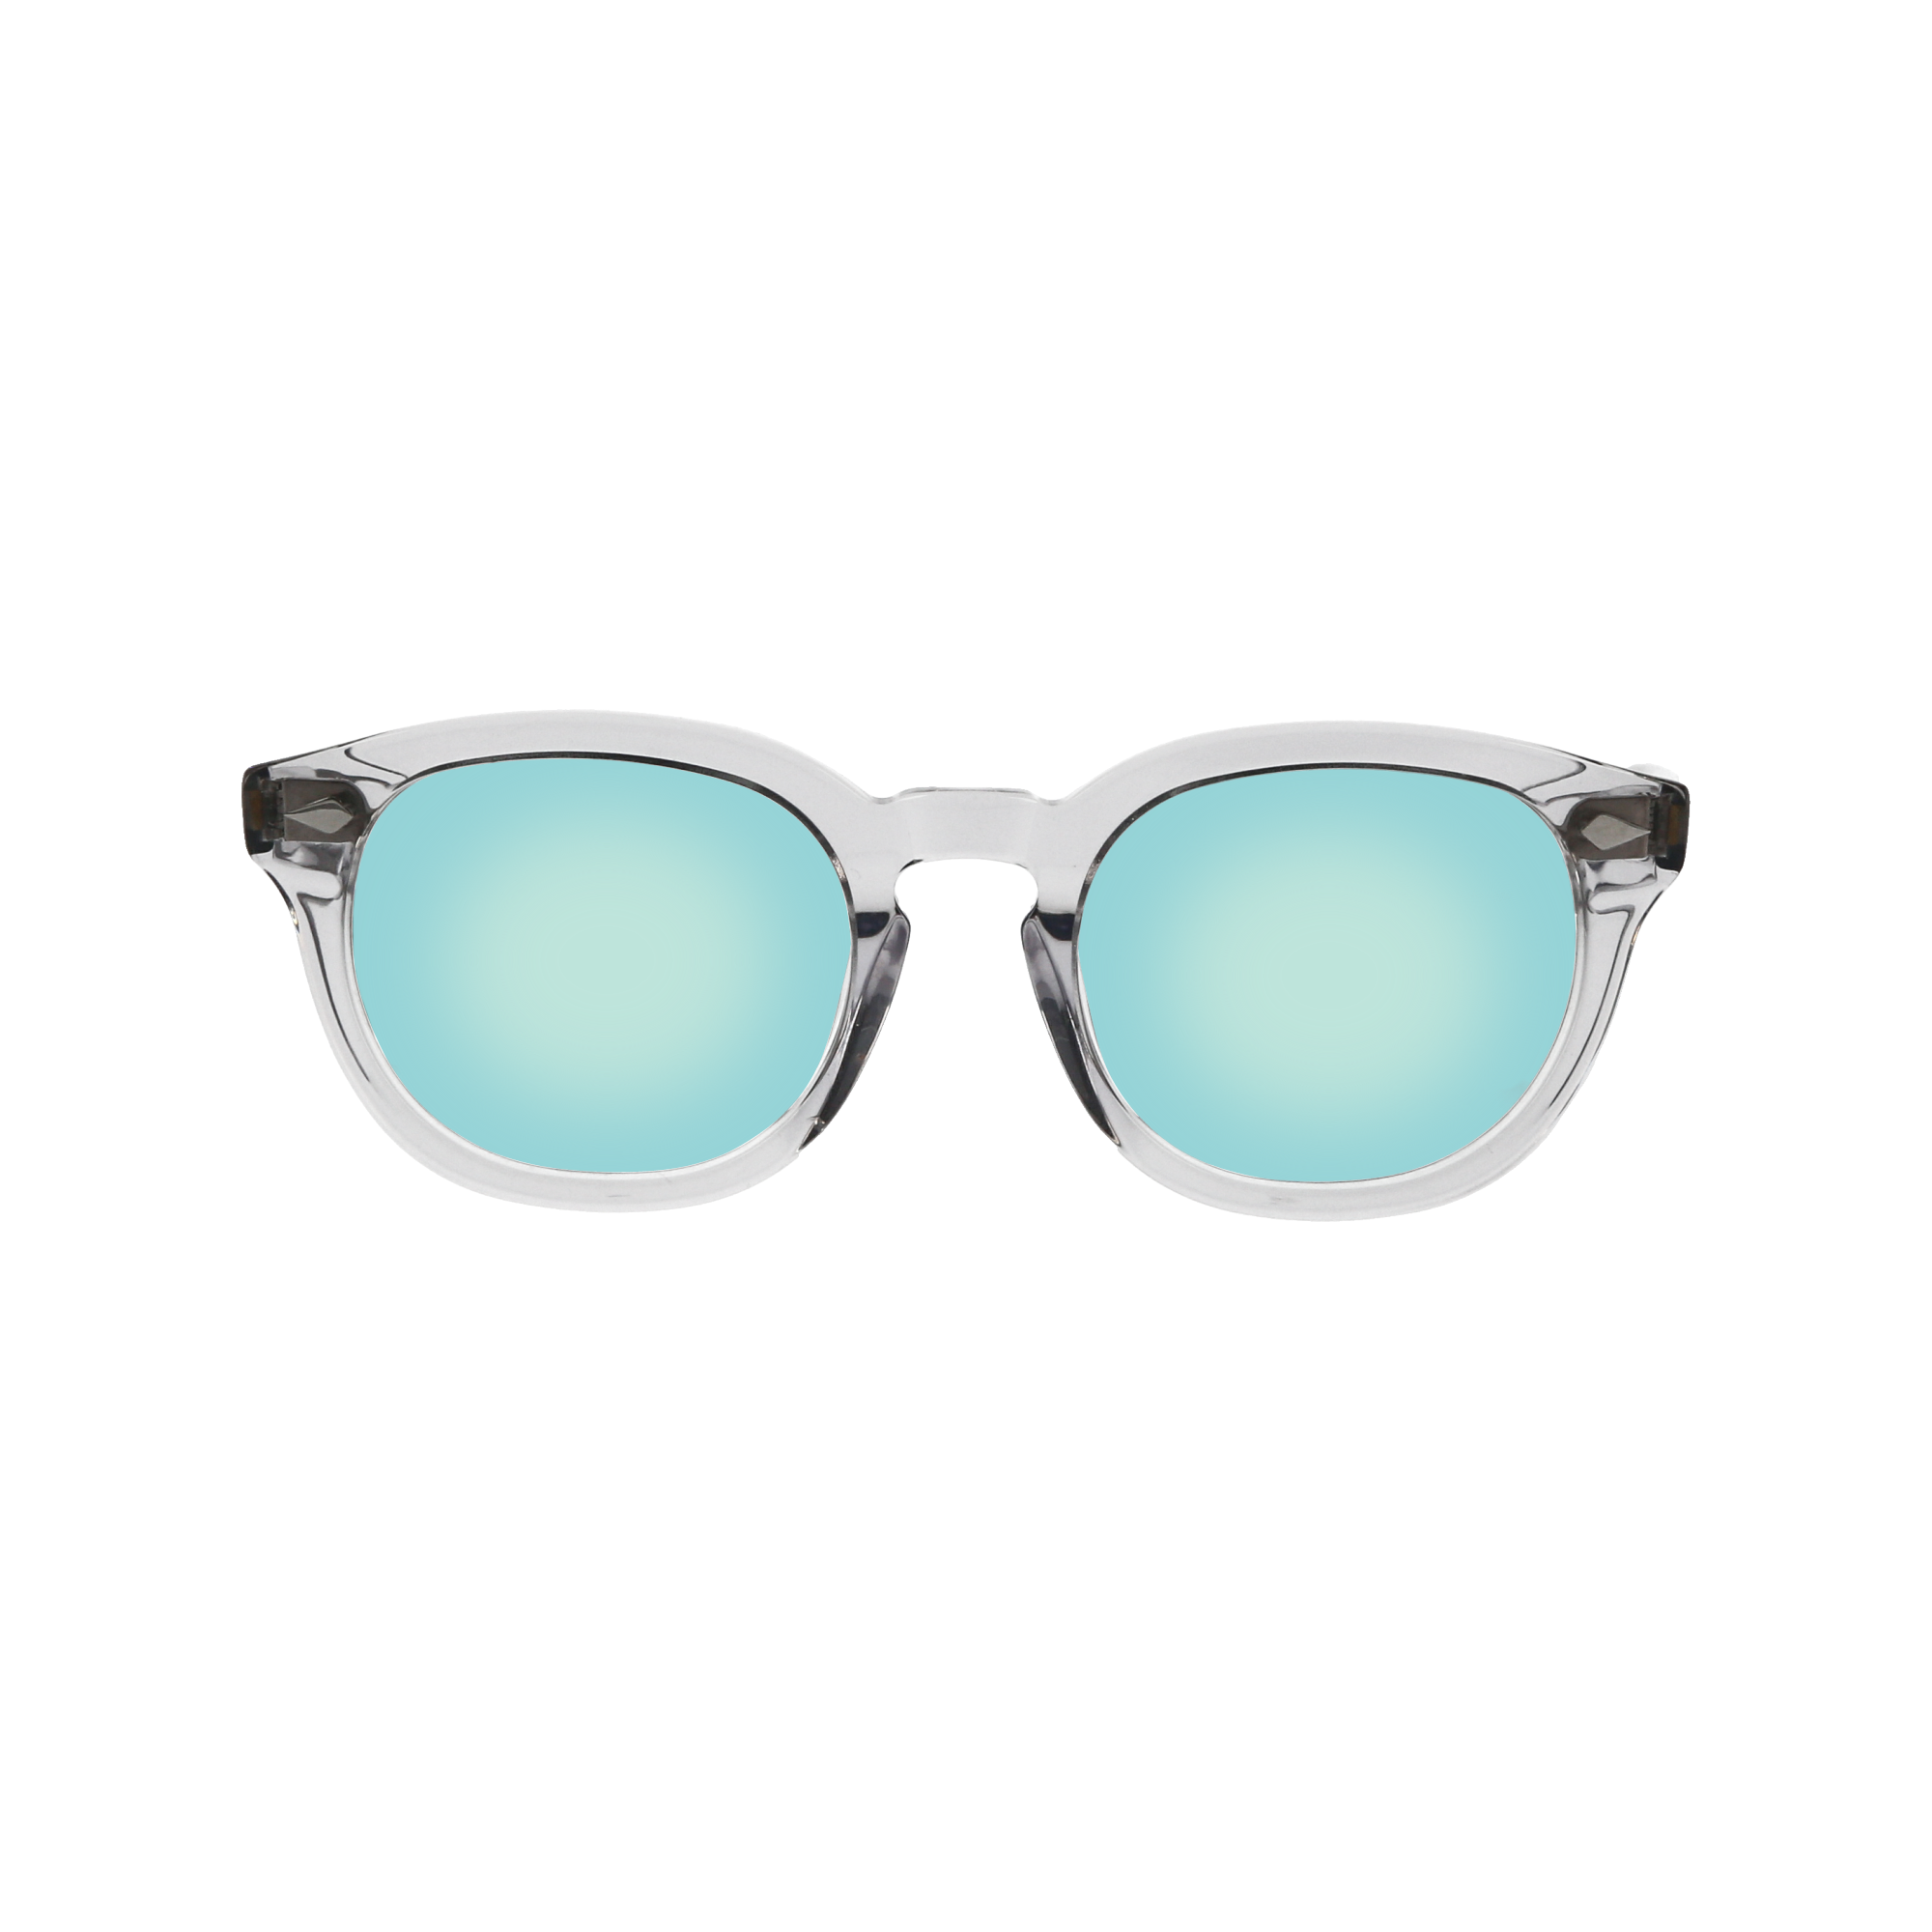 Edit Sanju Patel | Mirrored sunglasses men, Mens sunglasses, Square  sunglasses men